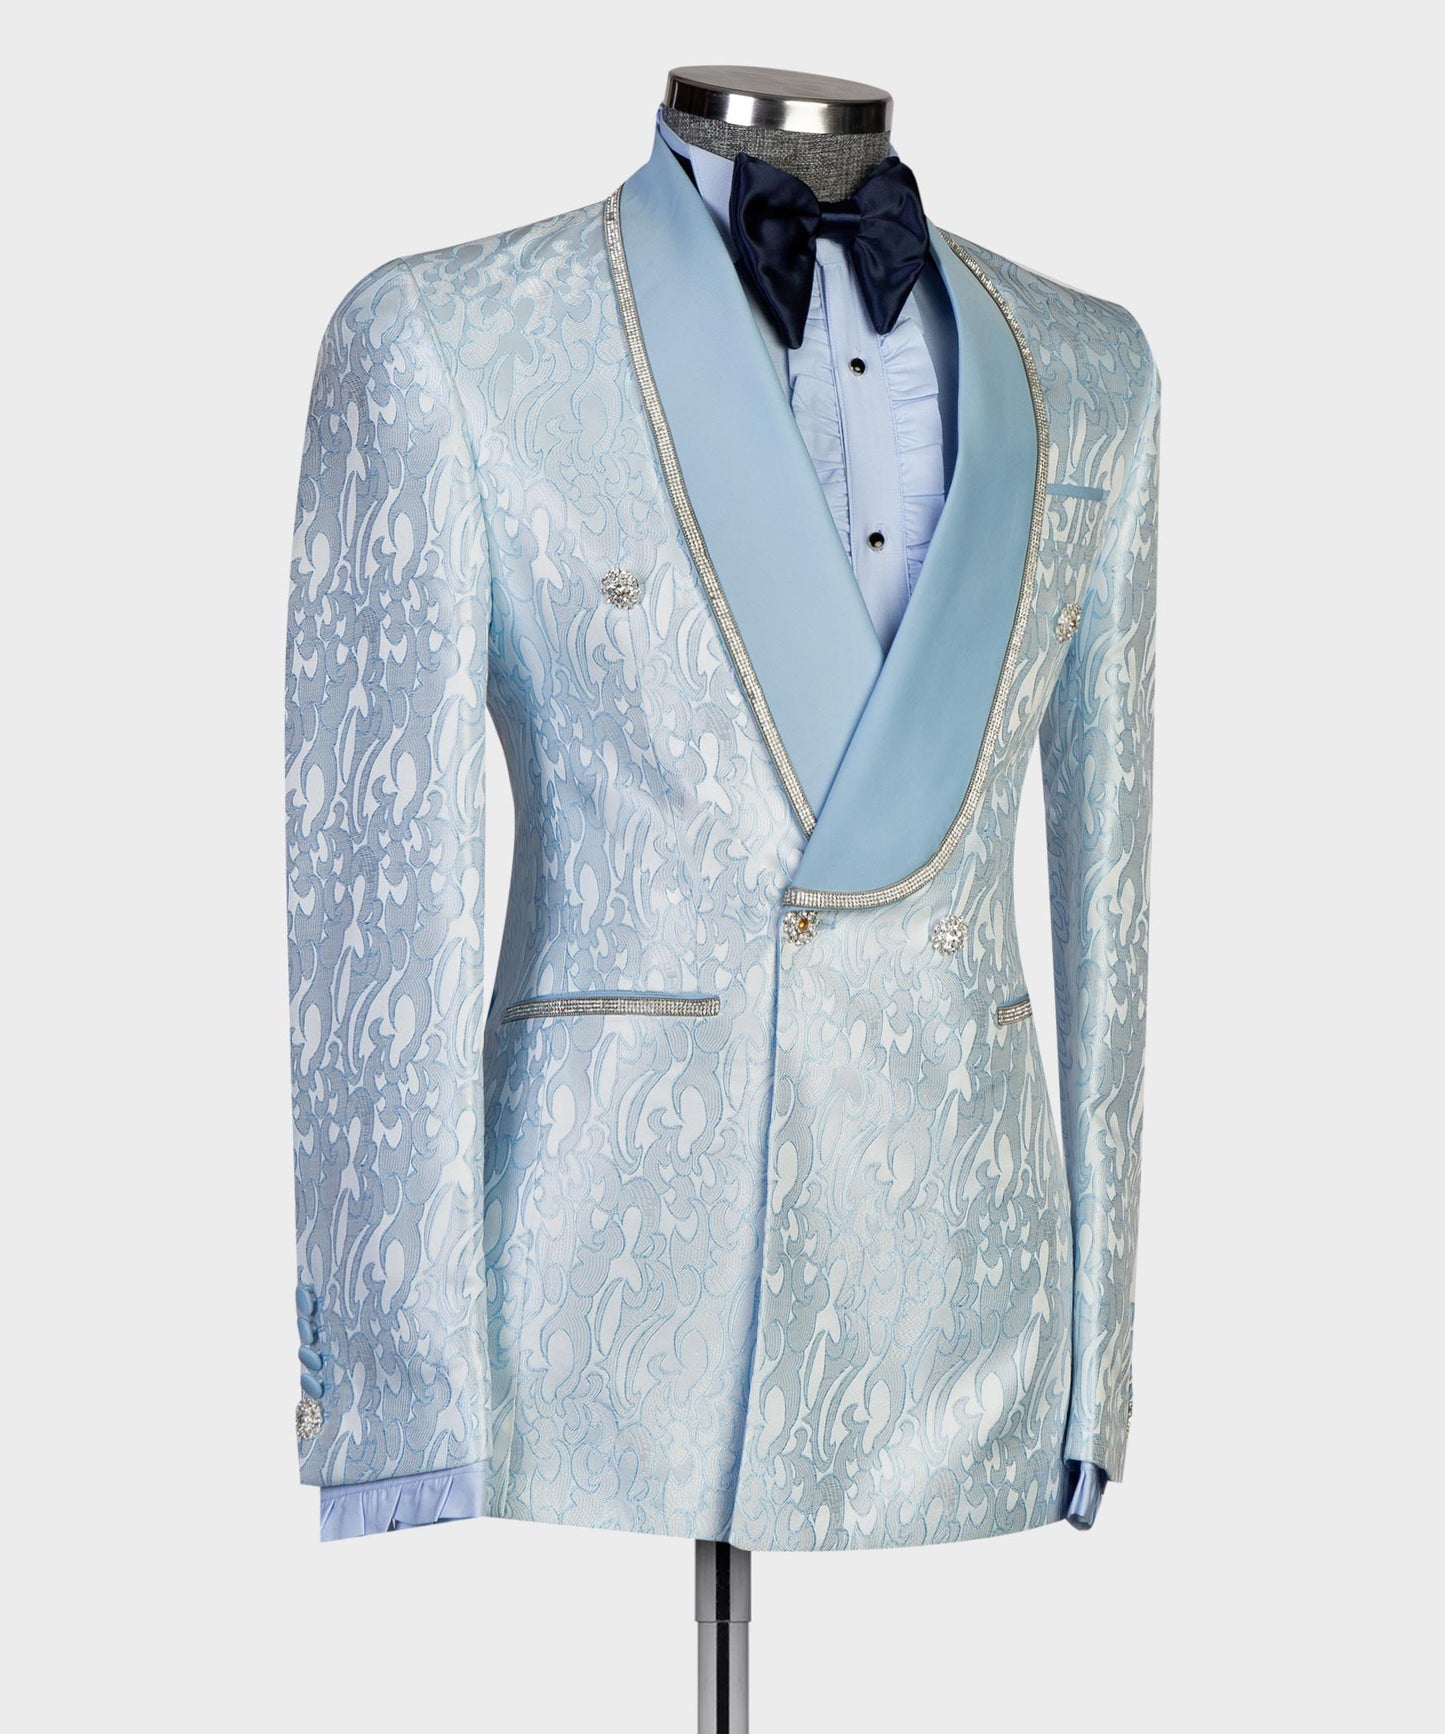 Men's 2 Piece Blue Tuxedo Shiny Suit, Stoned